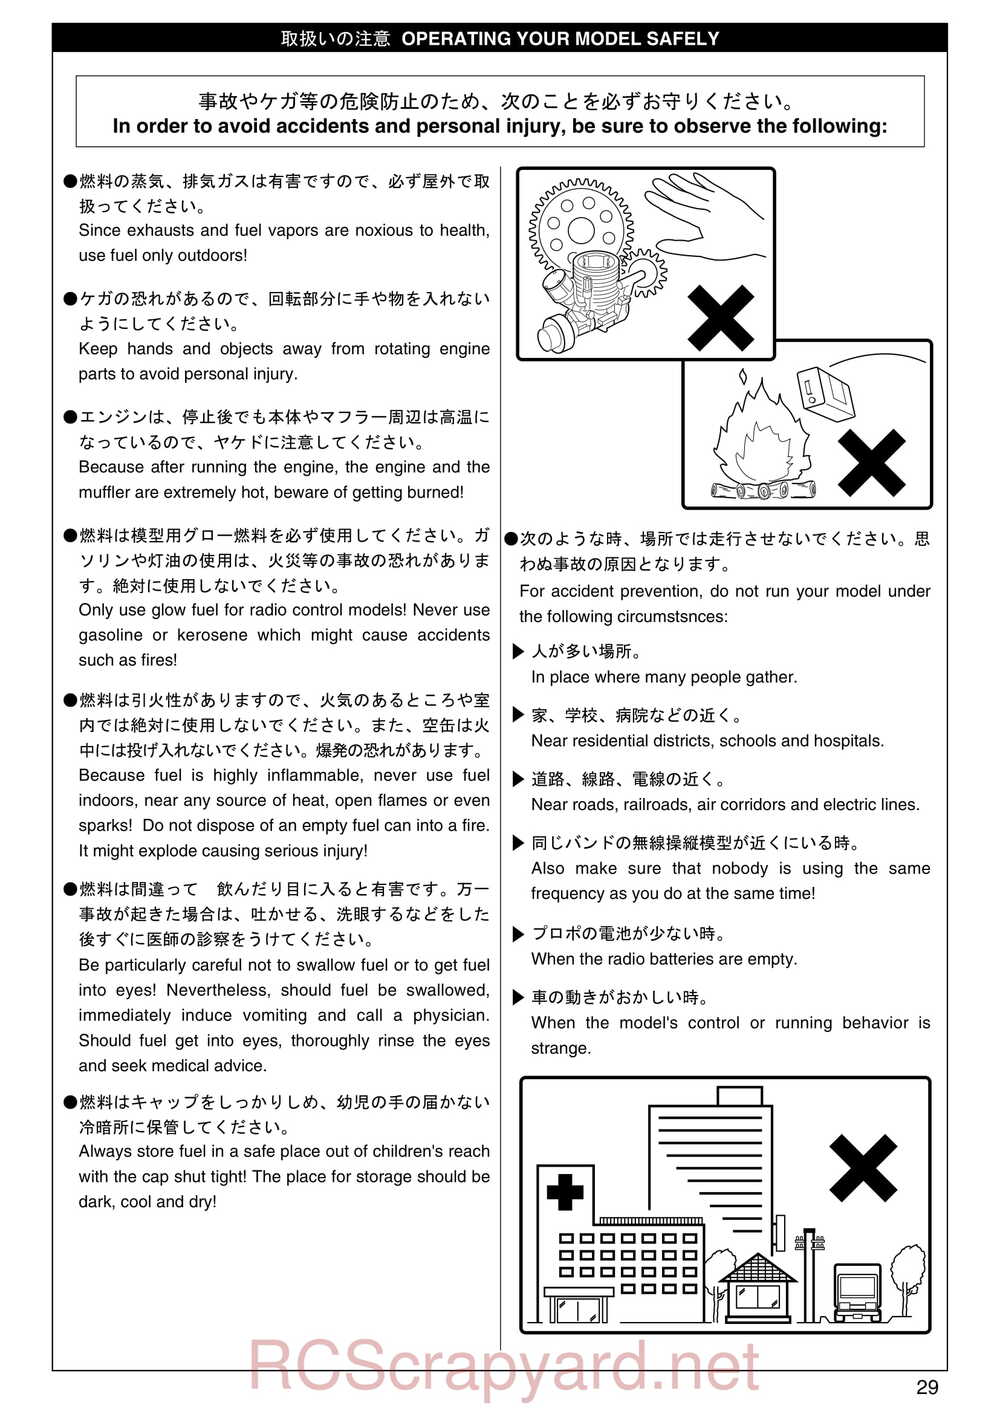 Kyosho - 31255 - V-One RR Evolution - Manual - Page 29